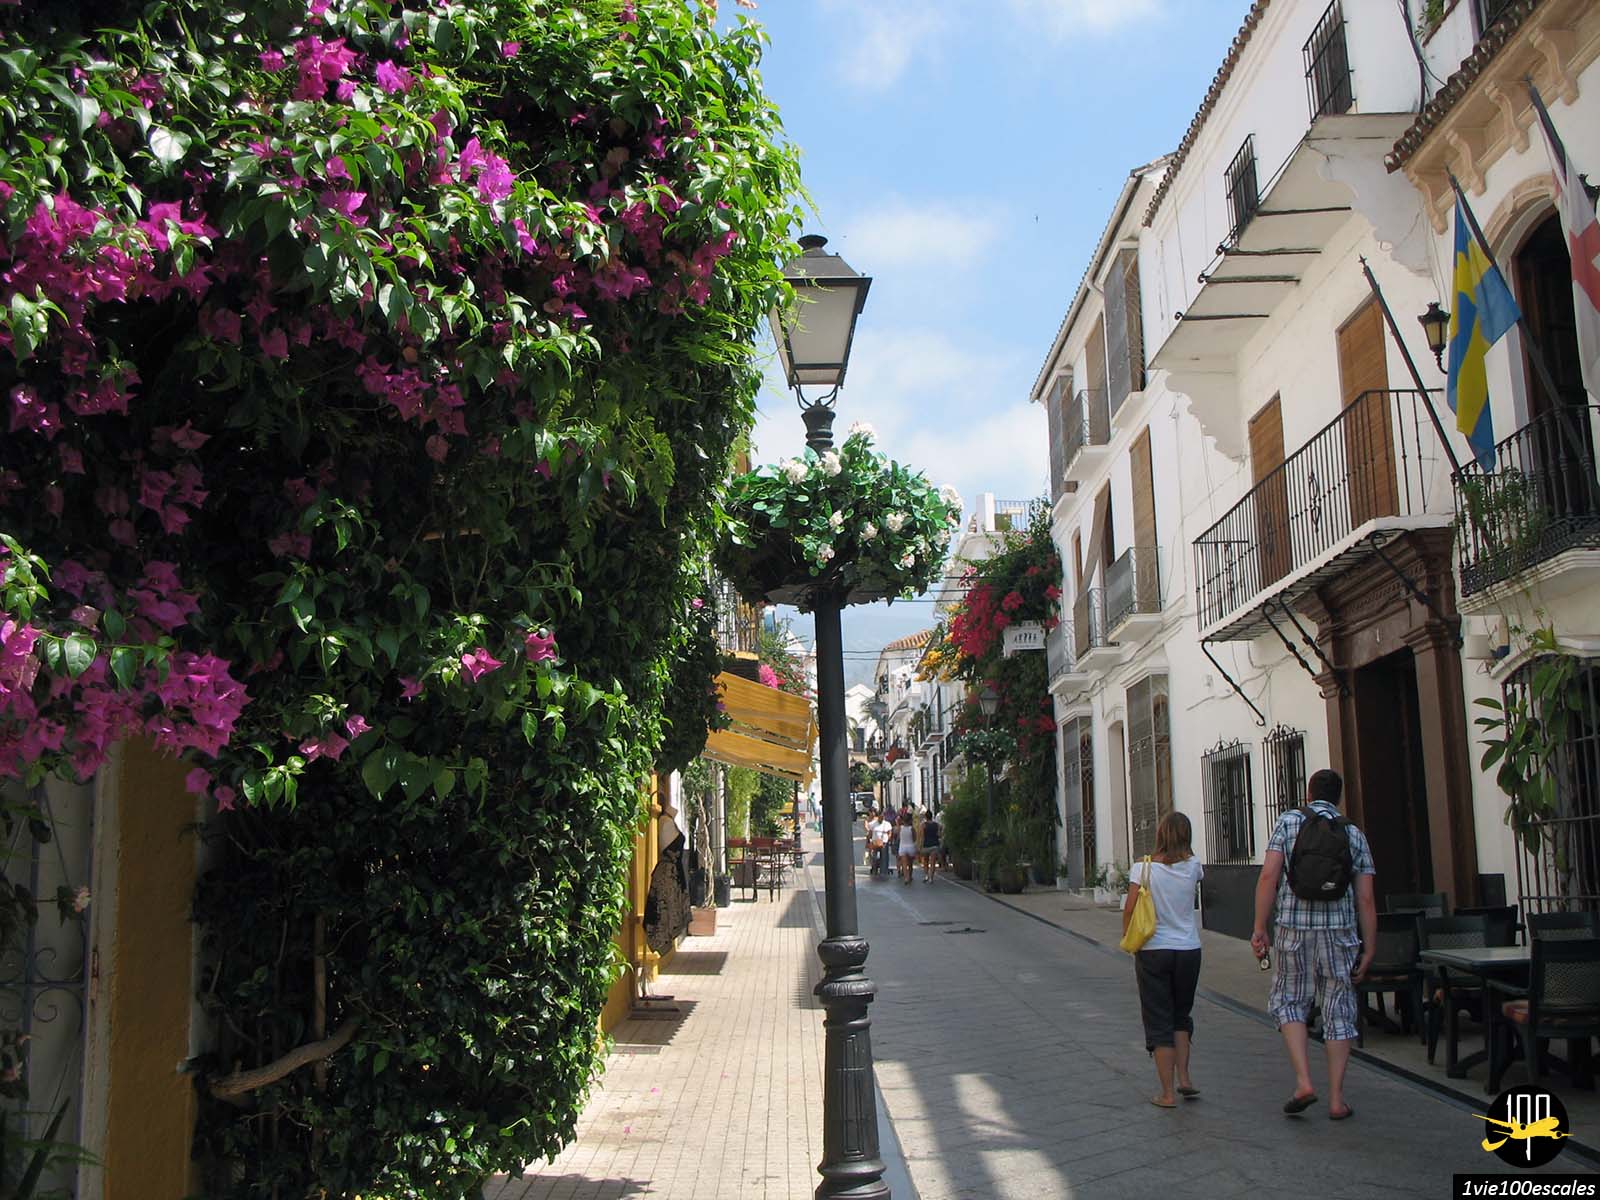 Les ruelles fleuries dans la vieille ville de Marbella en Espagne